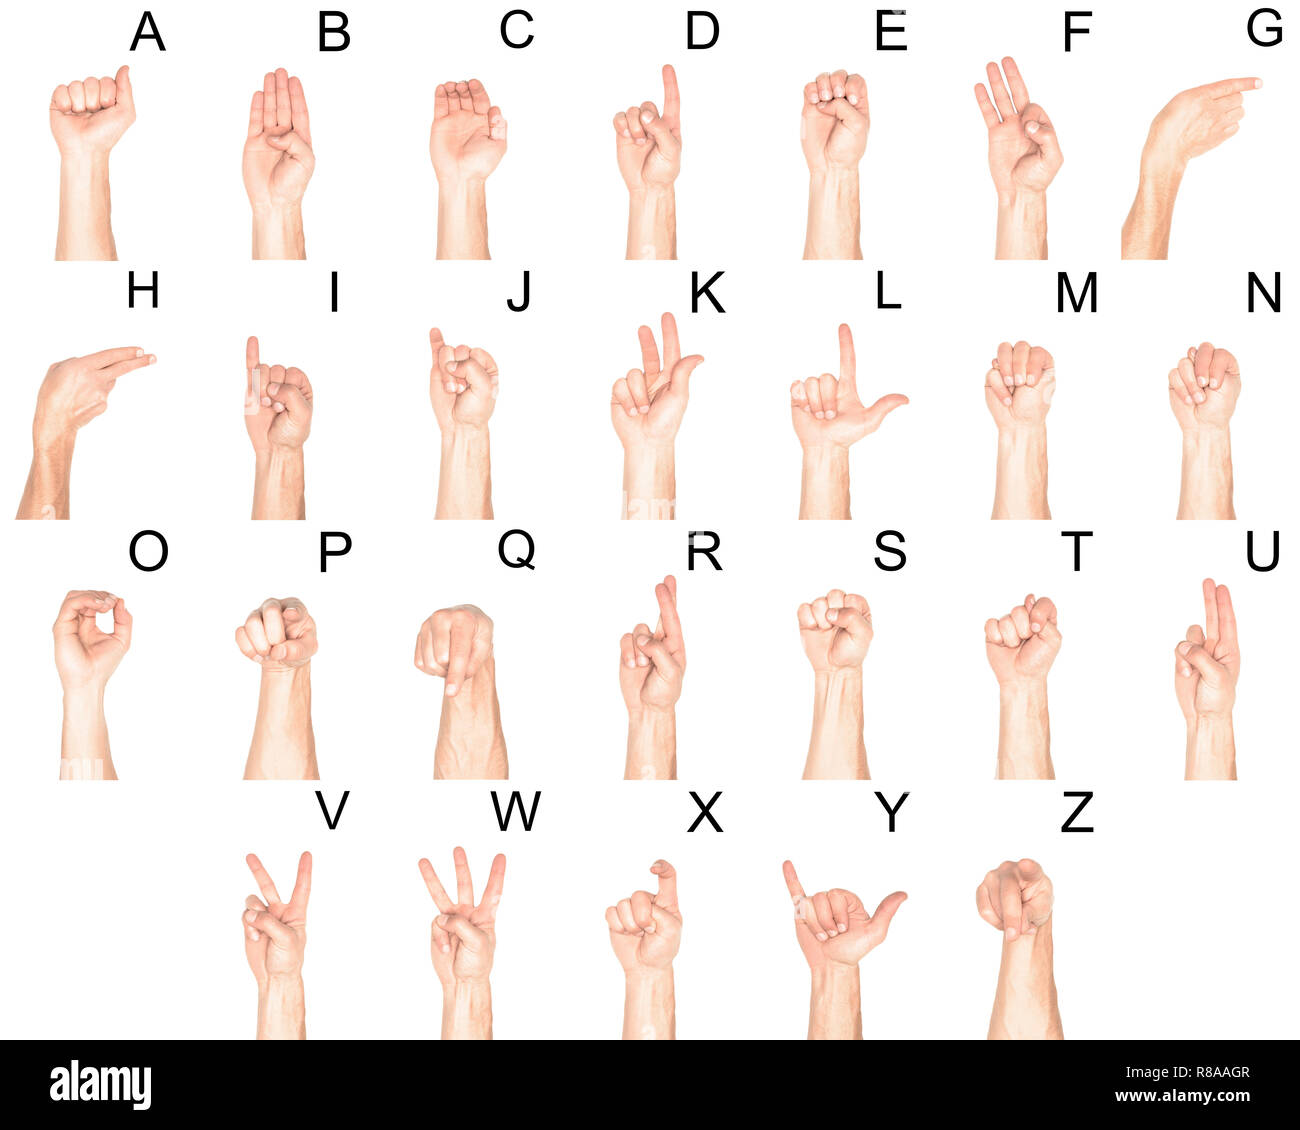 Fracaso En segundo lugar Lustre Establezca el lenguaje de señas con las manos masculinas y letras latinas,  aislado en blanco Fotografía de stock - Alamy